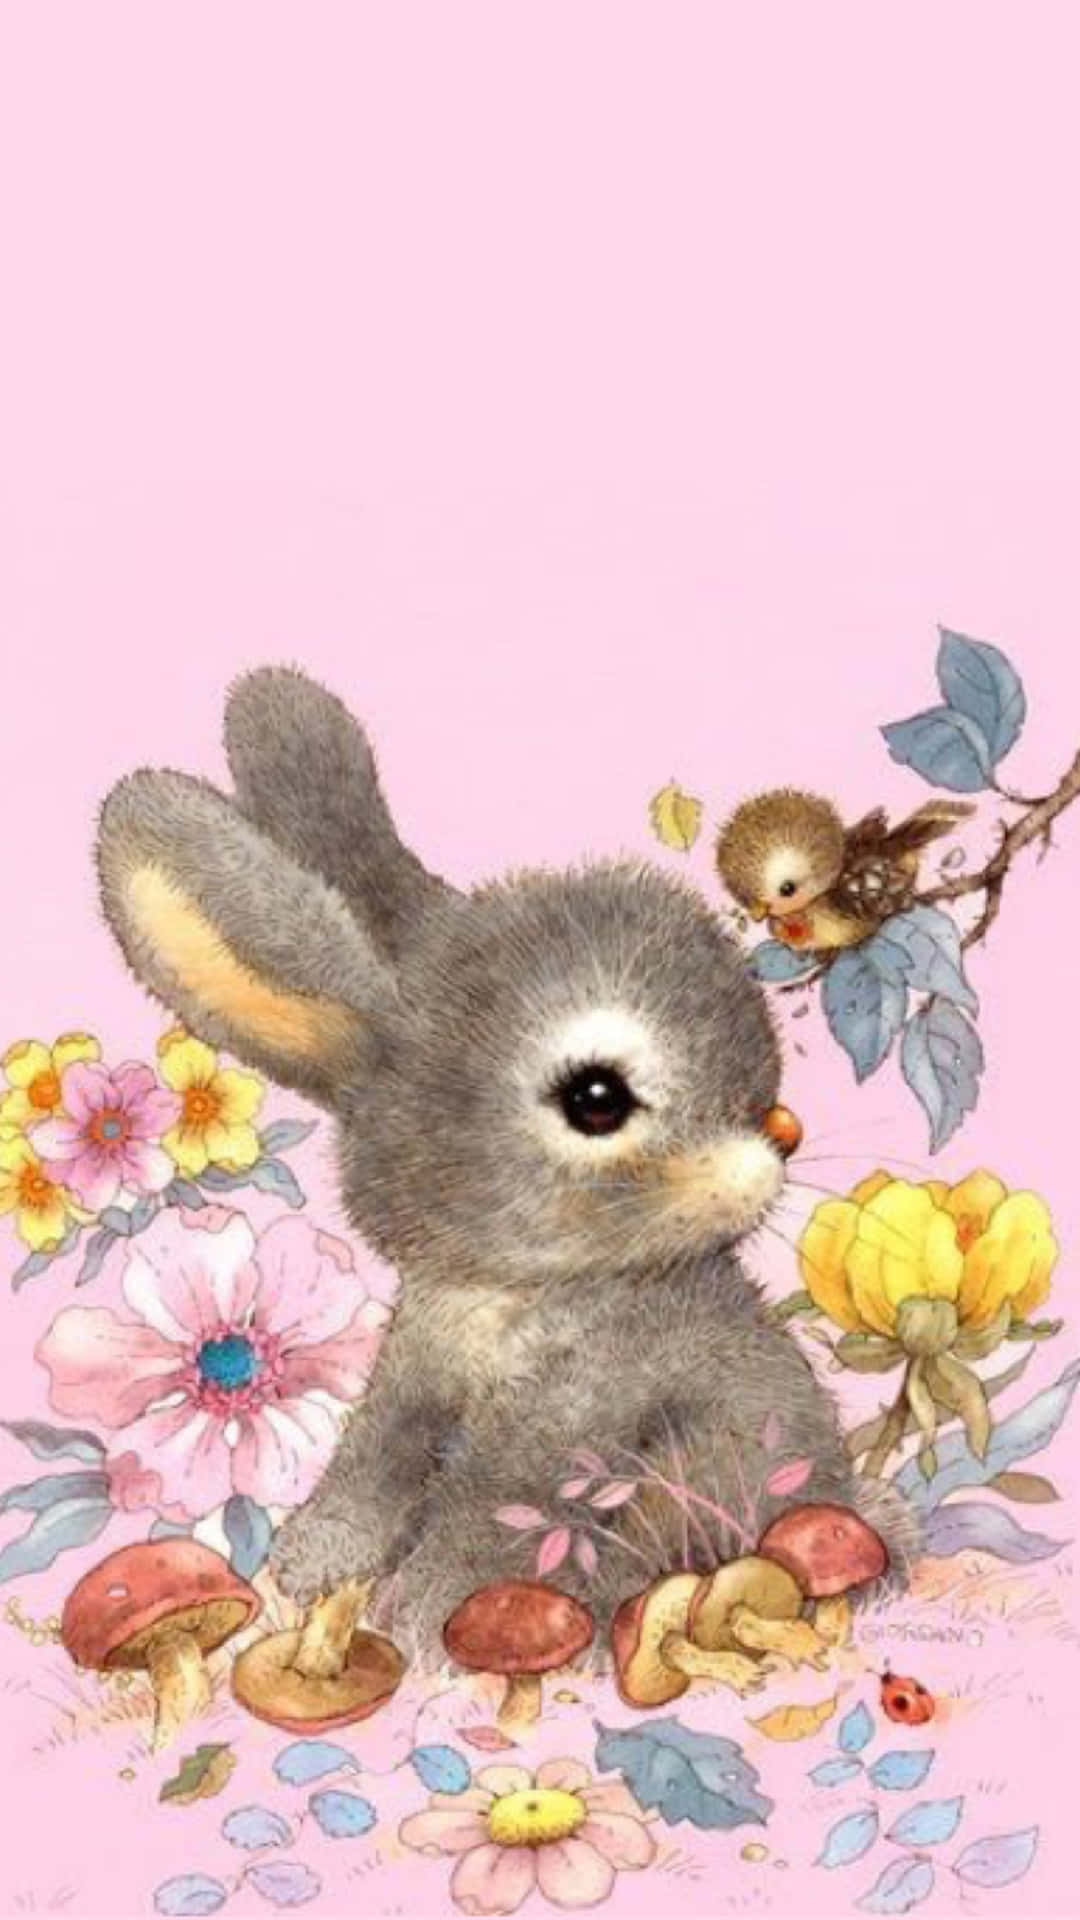 Cute Bunnyand Bird Friends.jpg Wallpaper